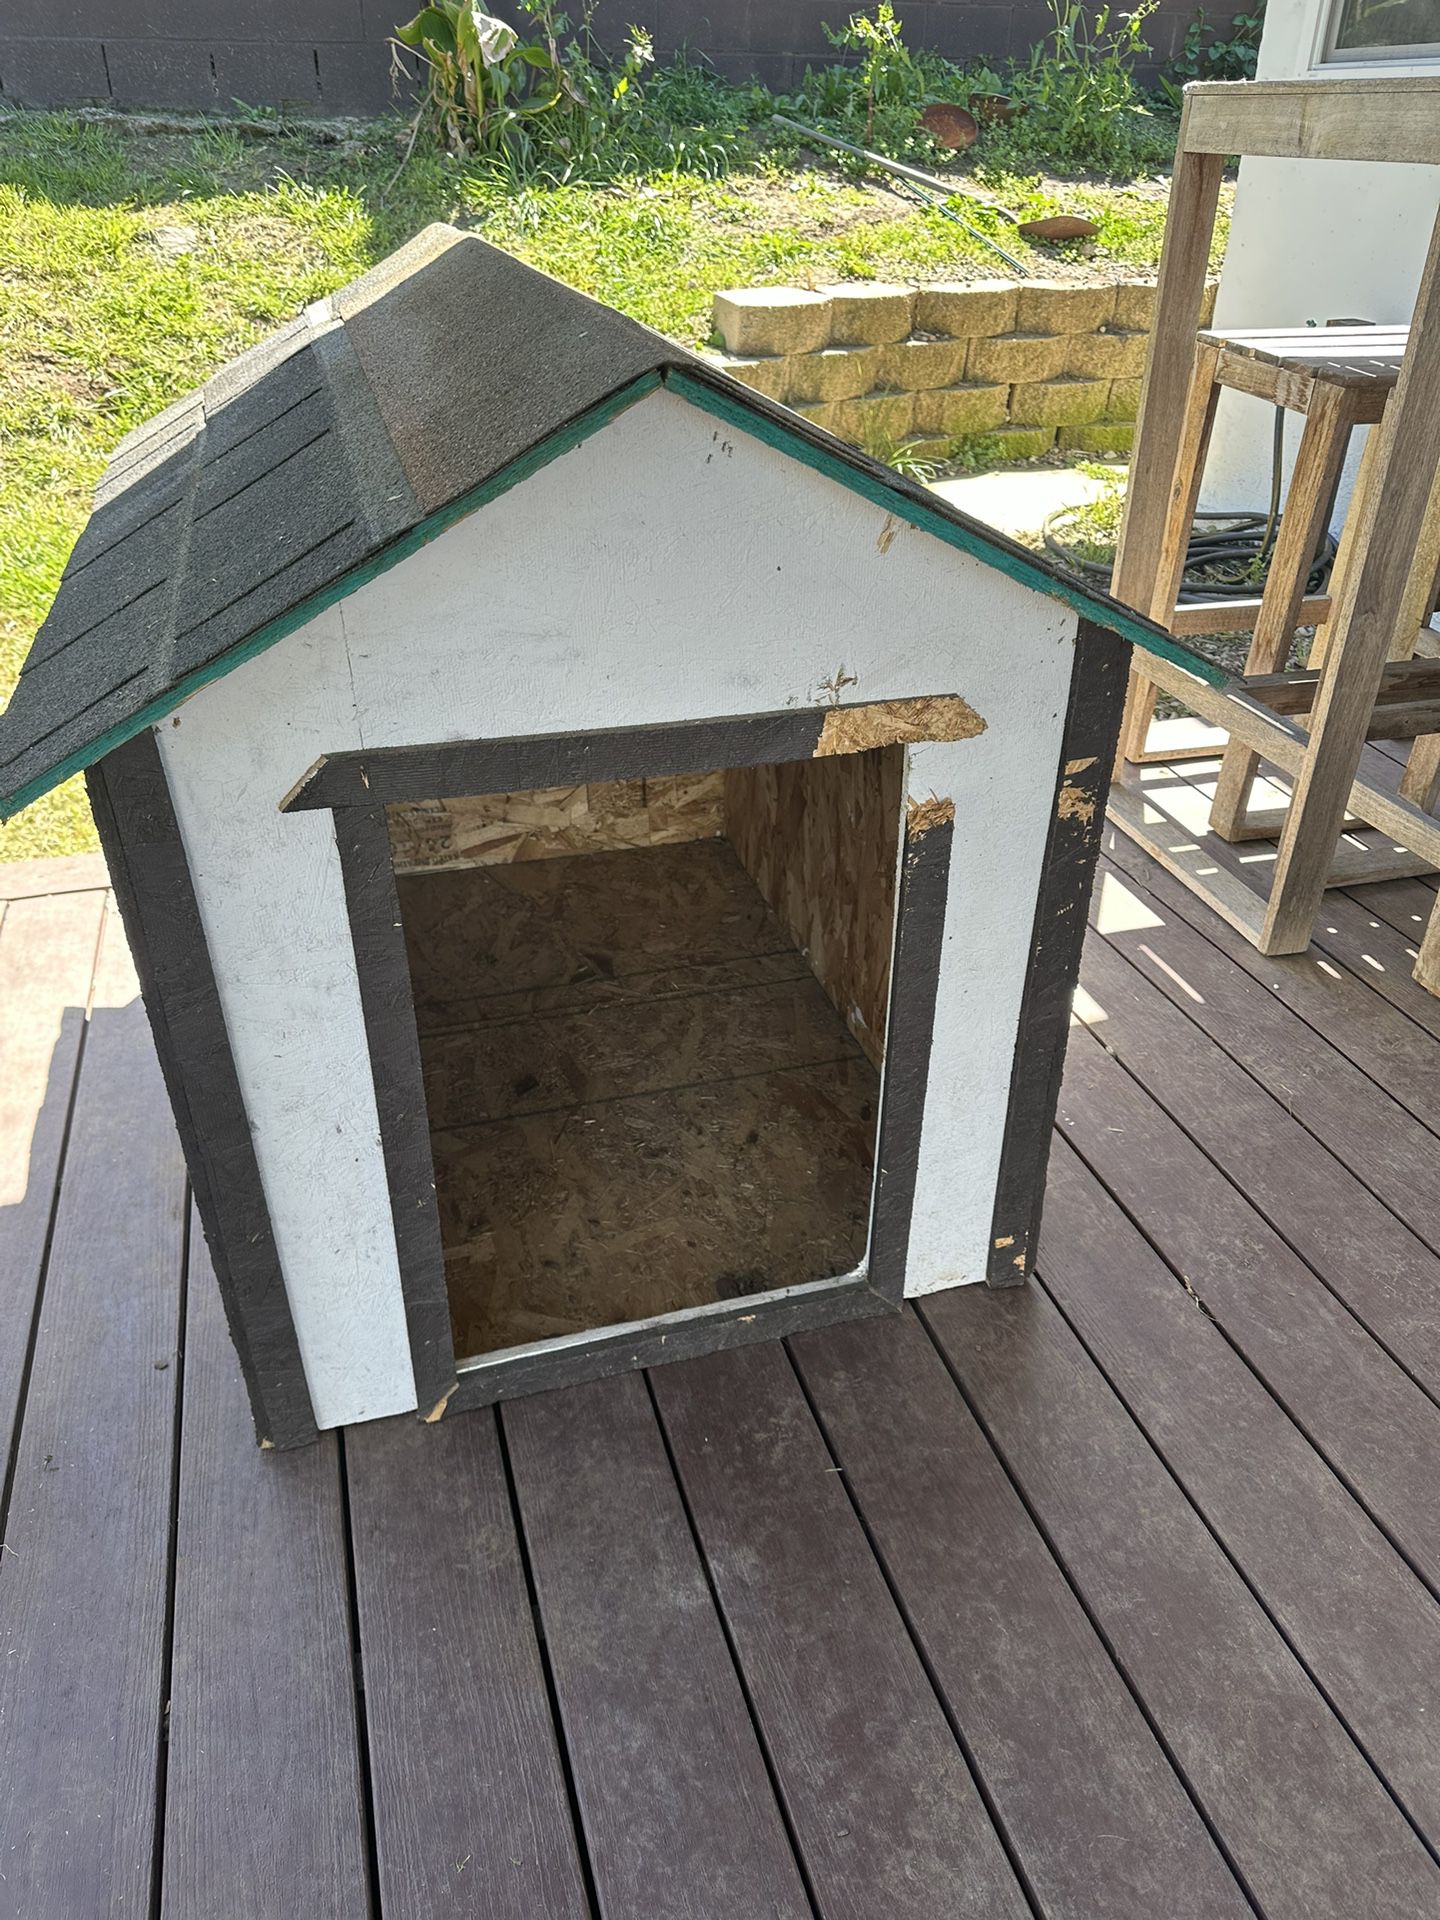 Large Dog House 